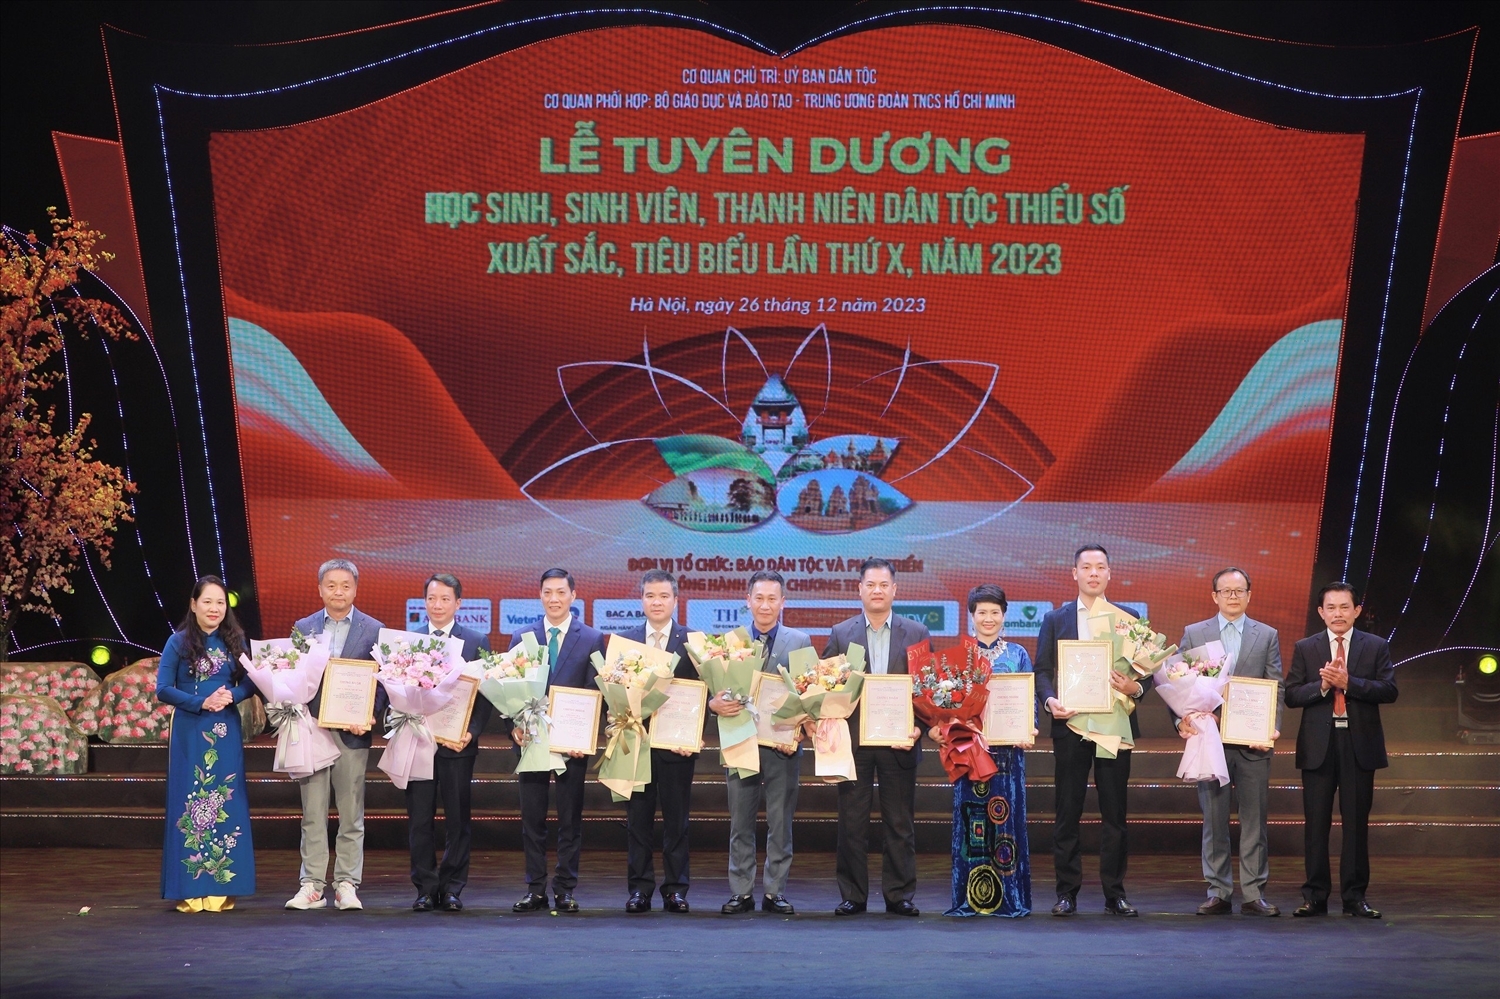 Thứ trưởng, Phó Chủ nhiệm UBDT Nông Thị Hà và Tổng Biên tập Báo Dân tộc và Phát triển, Trưởng Ban Tổ chức Lễ Tuyên dương trao Chứng nhận của Ban Tổ chức cho các Nhà tài trợ